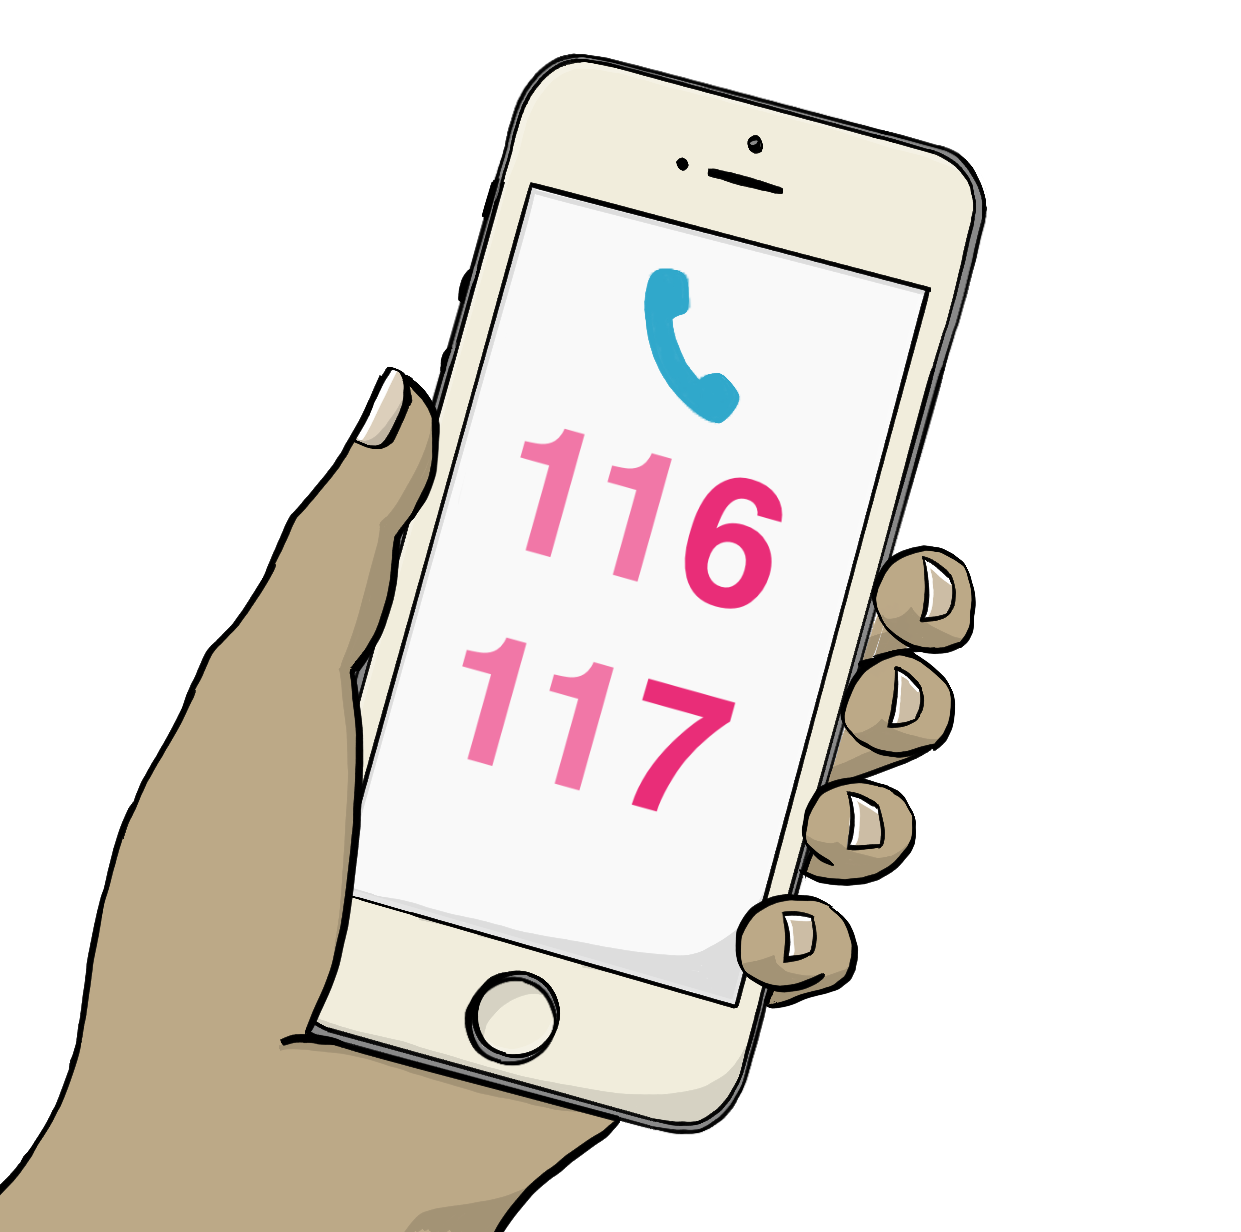 Handybildschirm mit der Nummer 116 117